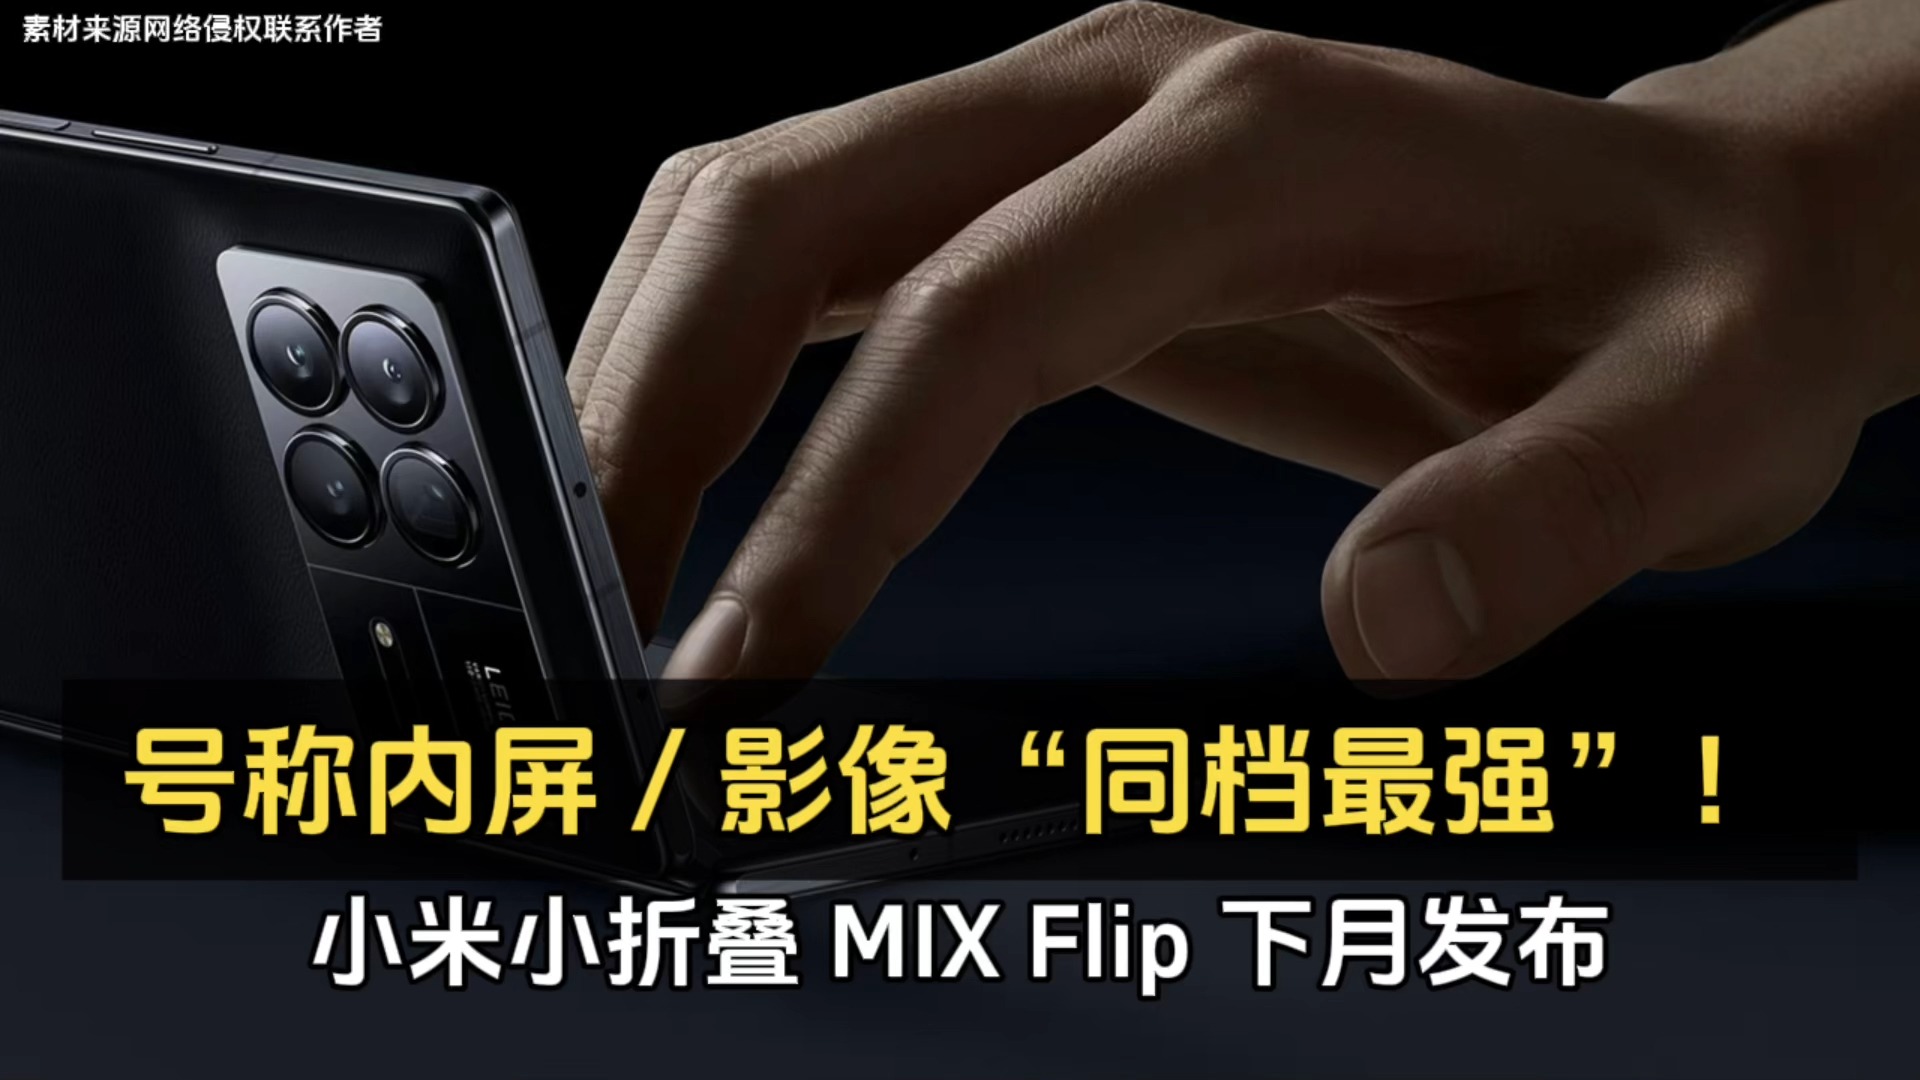 小米小折叠 MIX Flip 下月发布、号称内屏 / 影像“同档最强”！